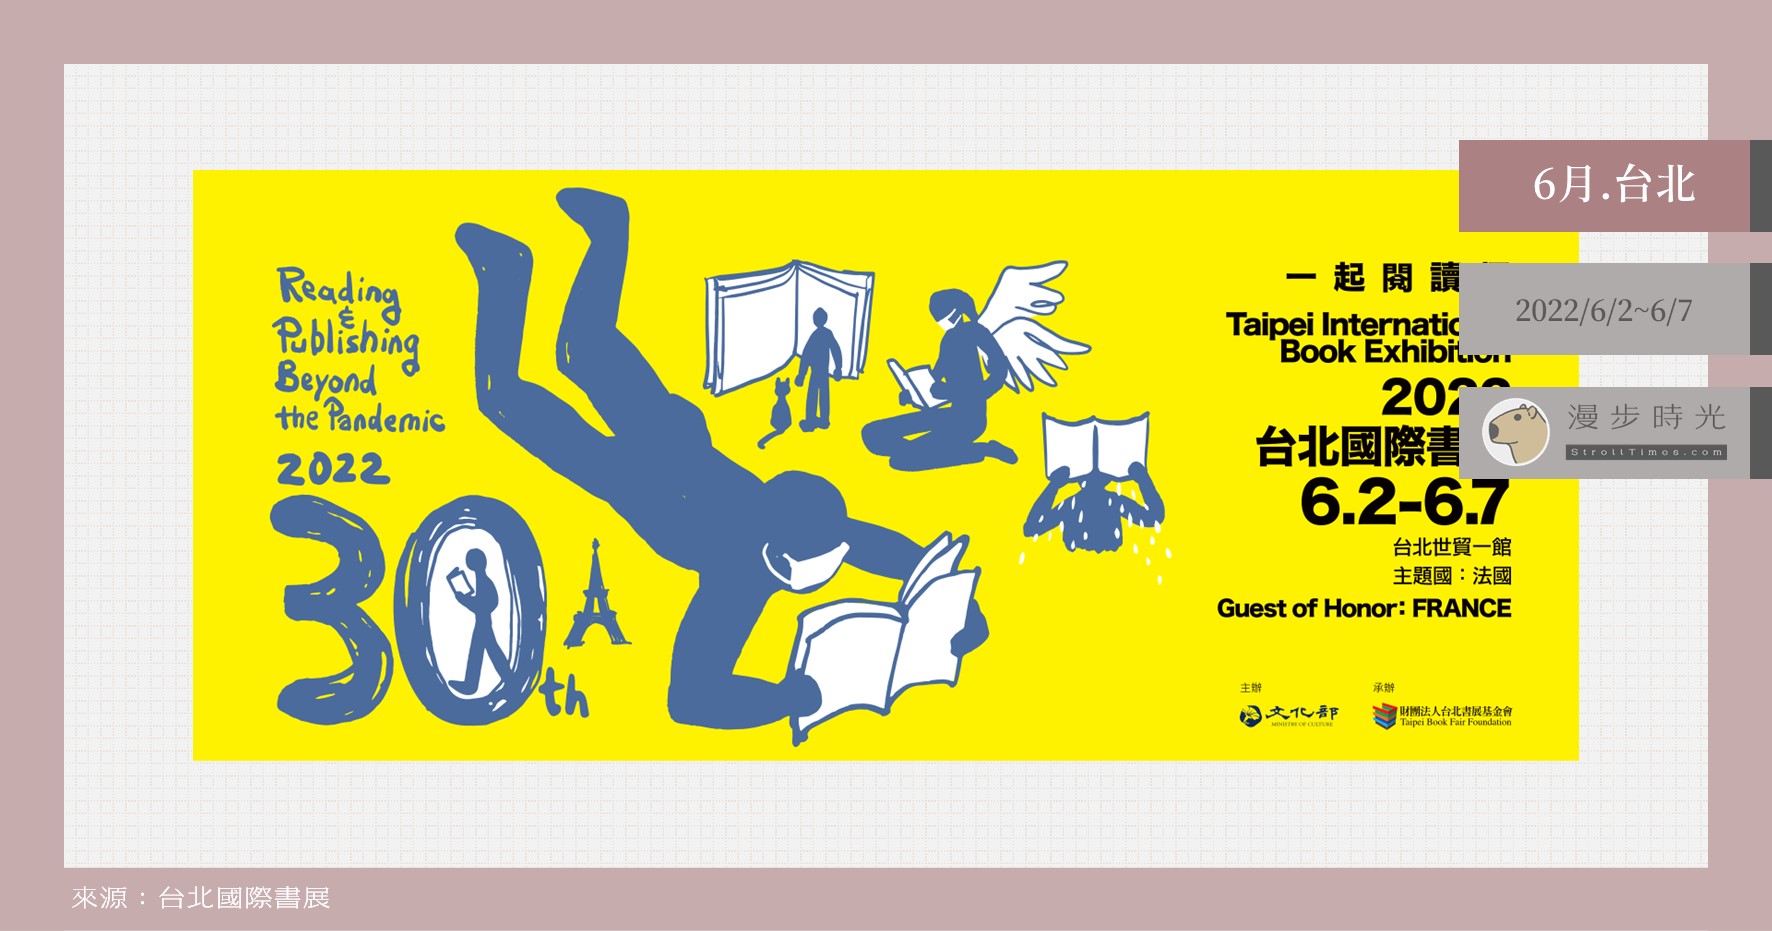 今日熱門文章：【台北活動】2022台北國際書展，一系列特色書展、市集、手做與講座衝擊閱讀魂！也有線上講座可參與喔！